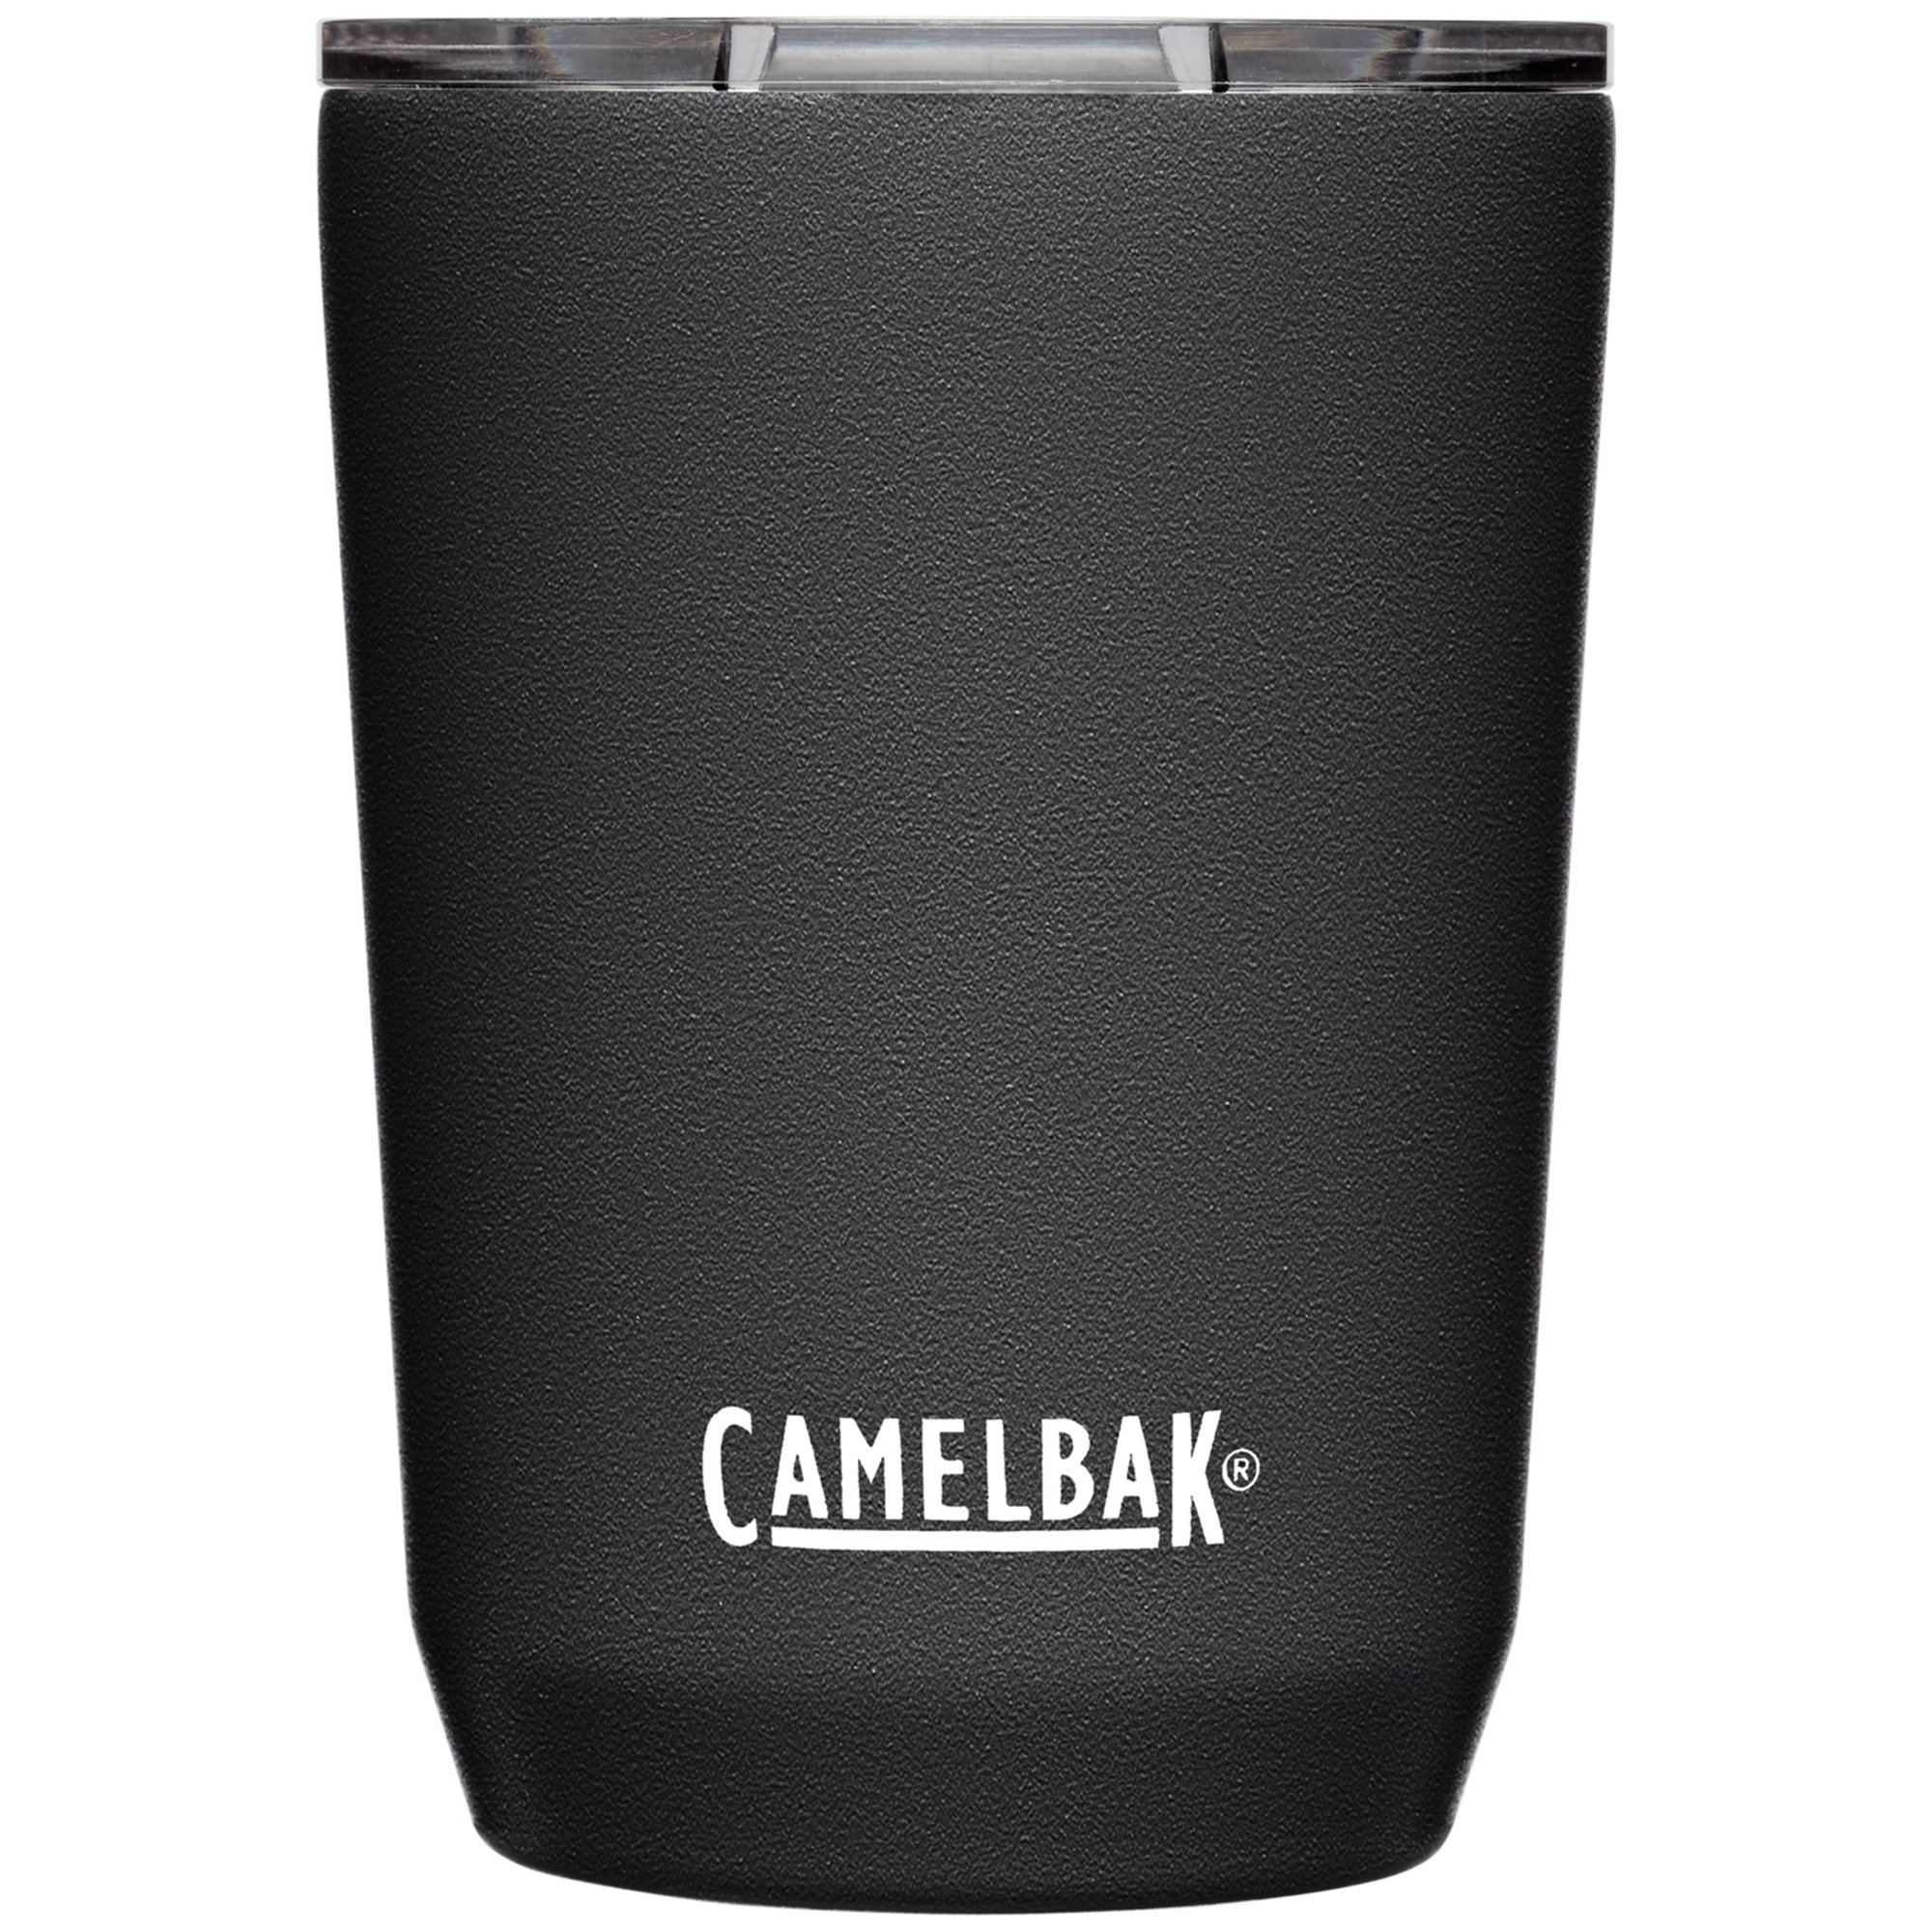 Camelbak Tumbler termokrus 0.35 liter, black